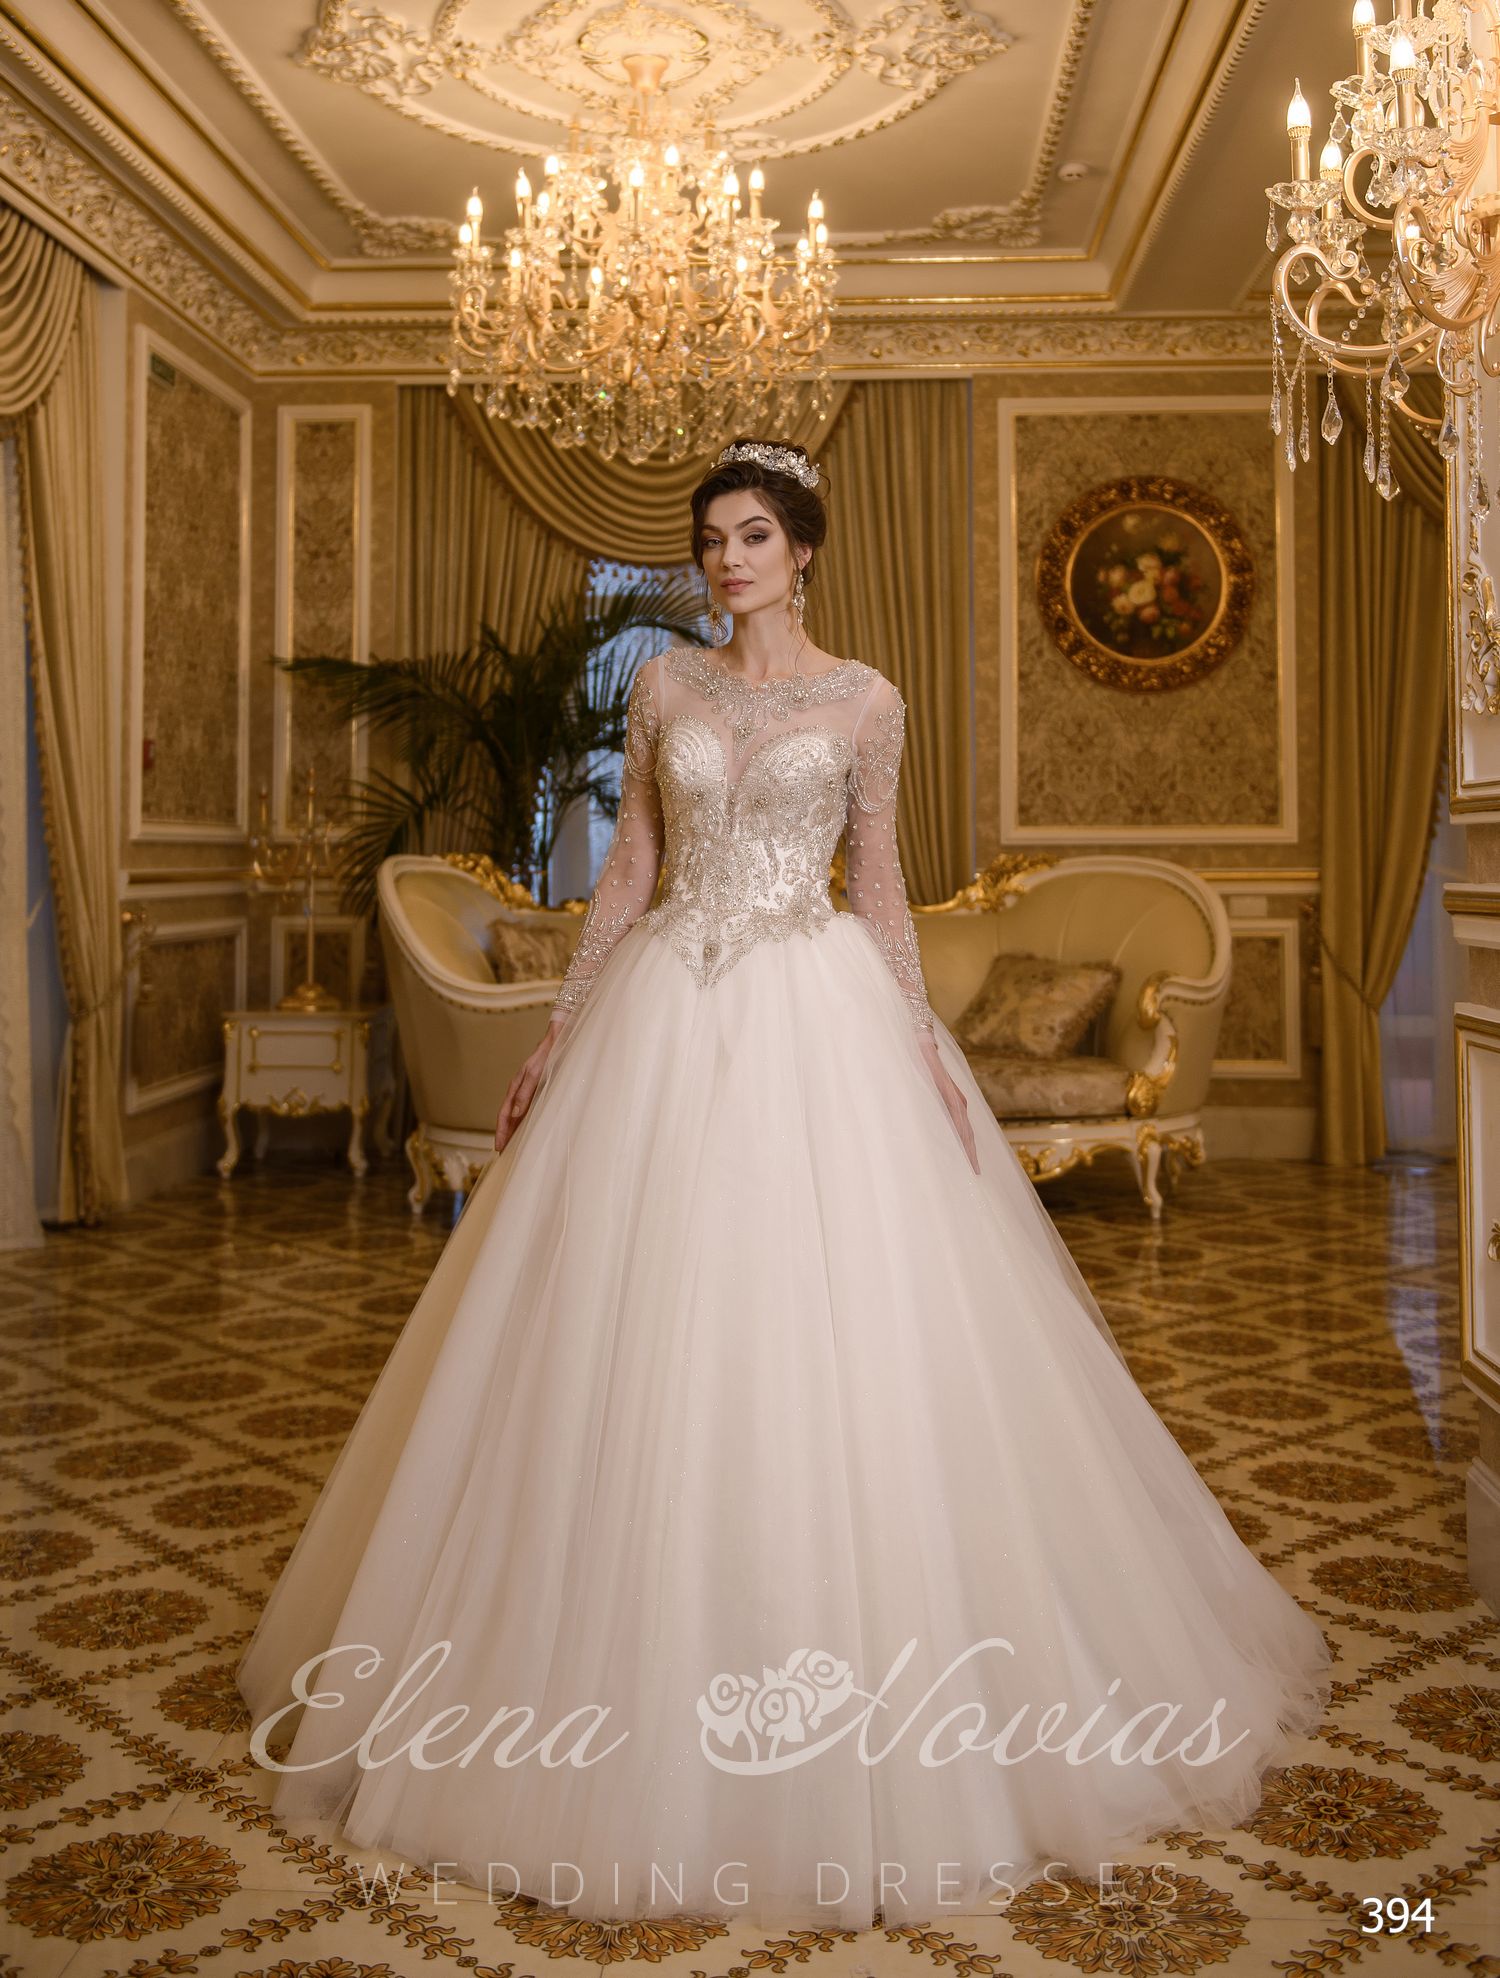 Luxury wedding dress by Elenanovias